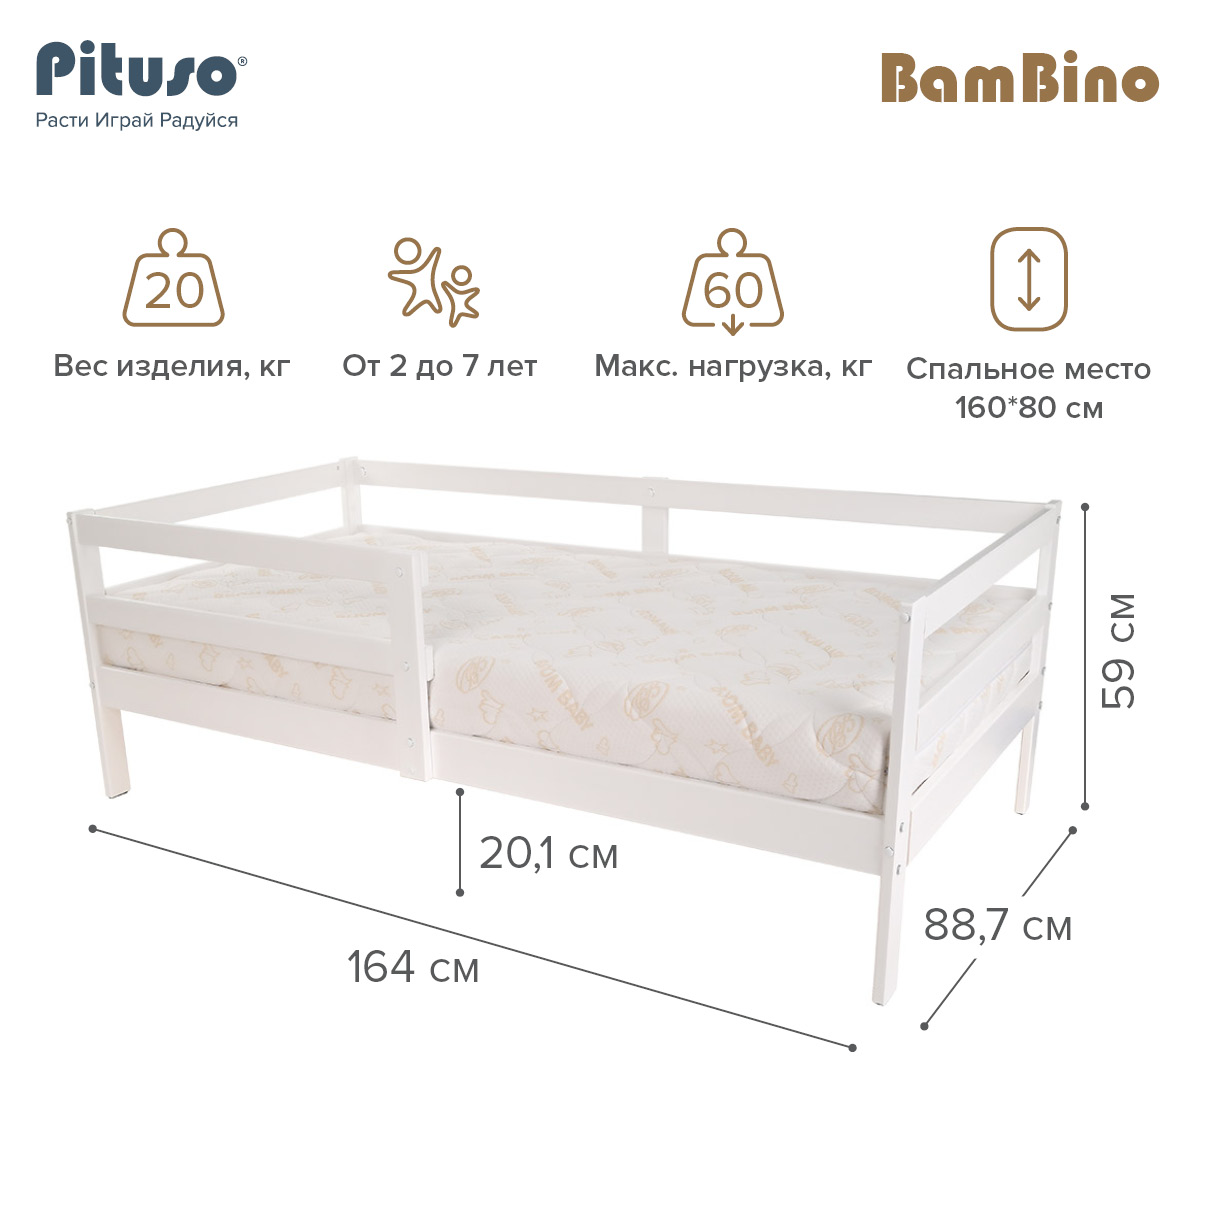 Кровать подростковая Pituso BamBino белый кровать подростковая pituso bambino белый